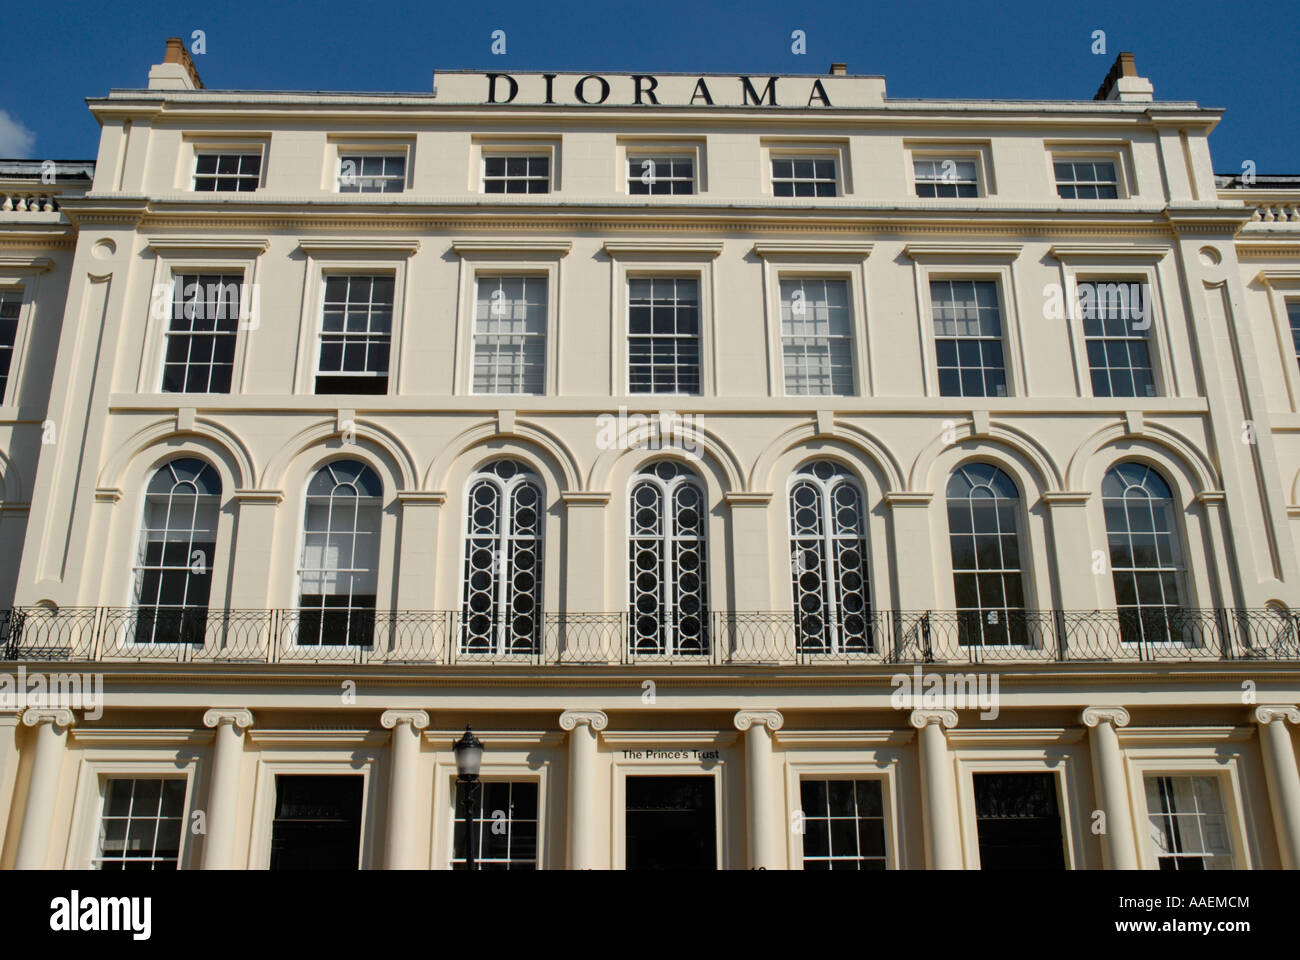 Le Diorama bâtiment dans Park Square Est, Regent's Park Londres Angleterre Banque D'Images